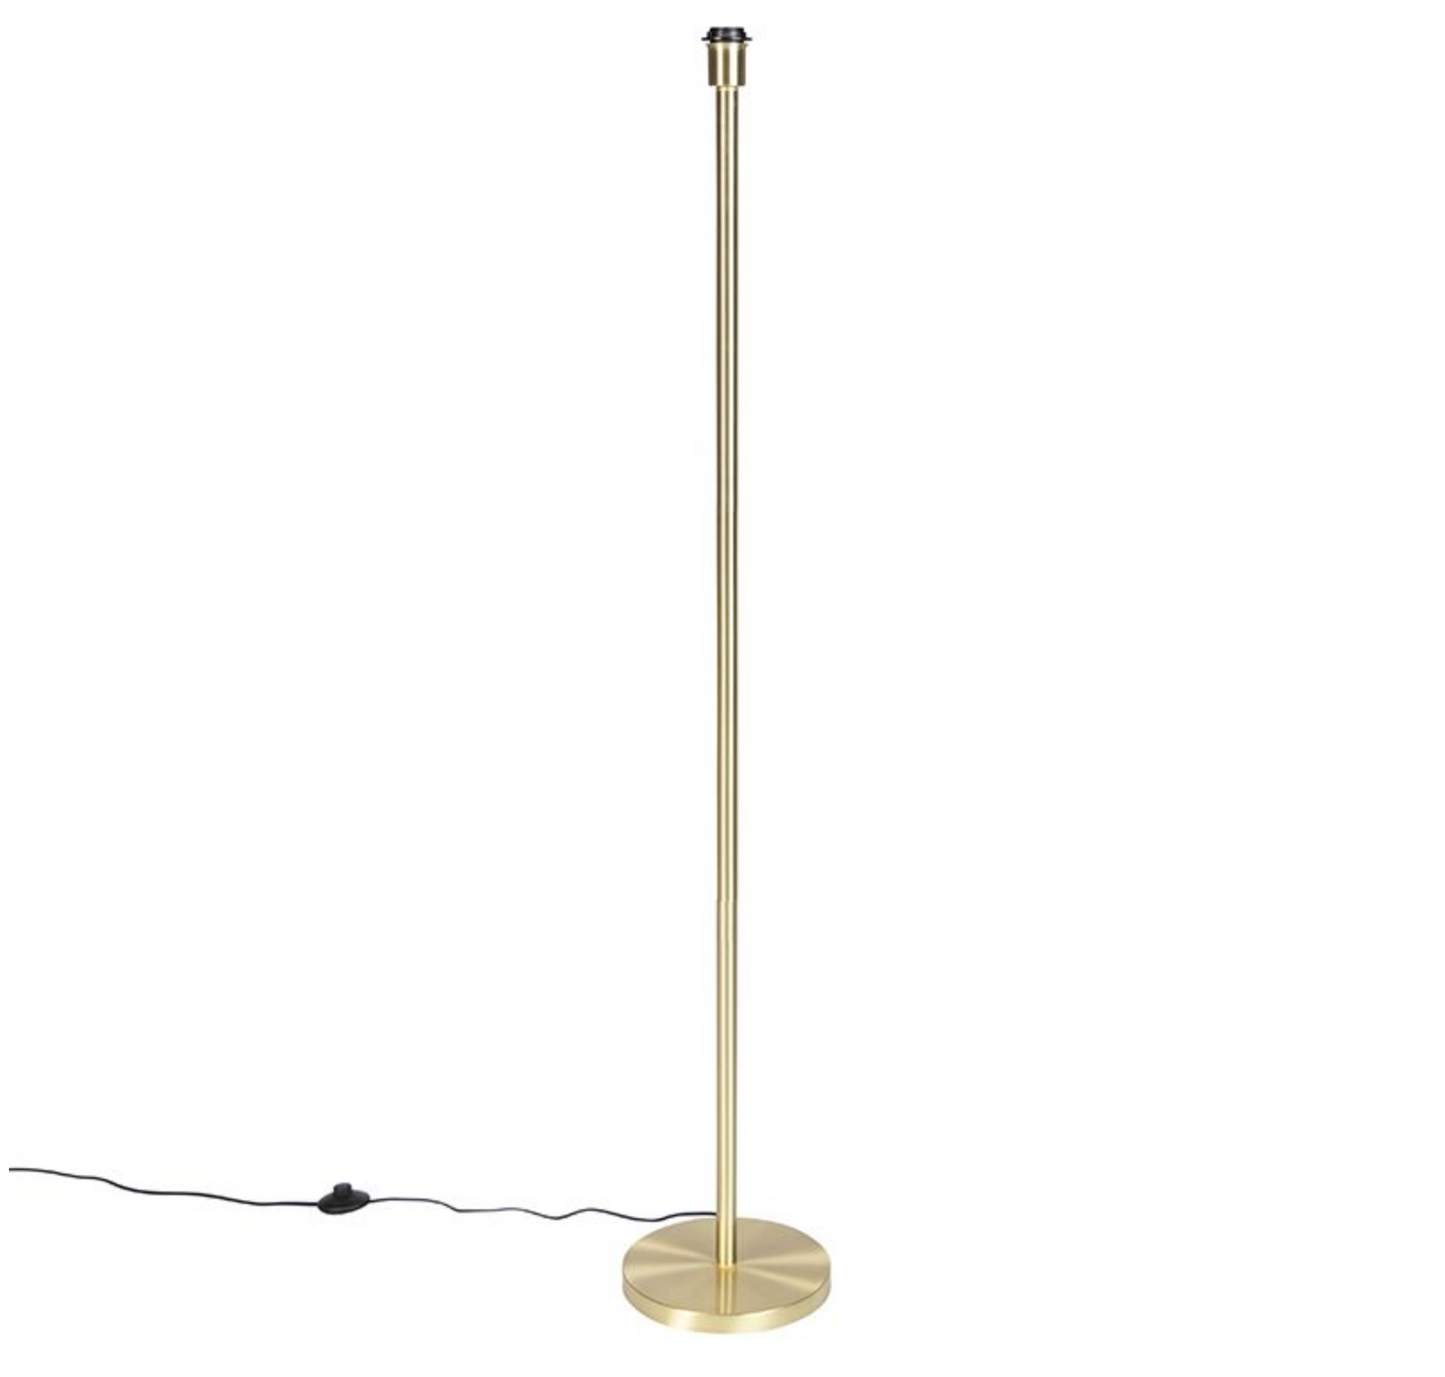 TUTU FLOOR LAMP - SMALL 18’’ 2-4 WEEKS